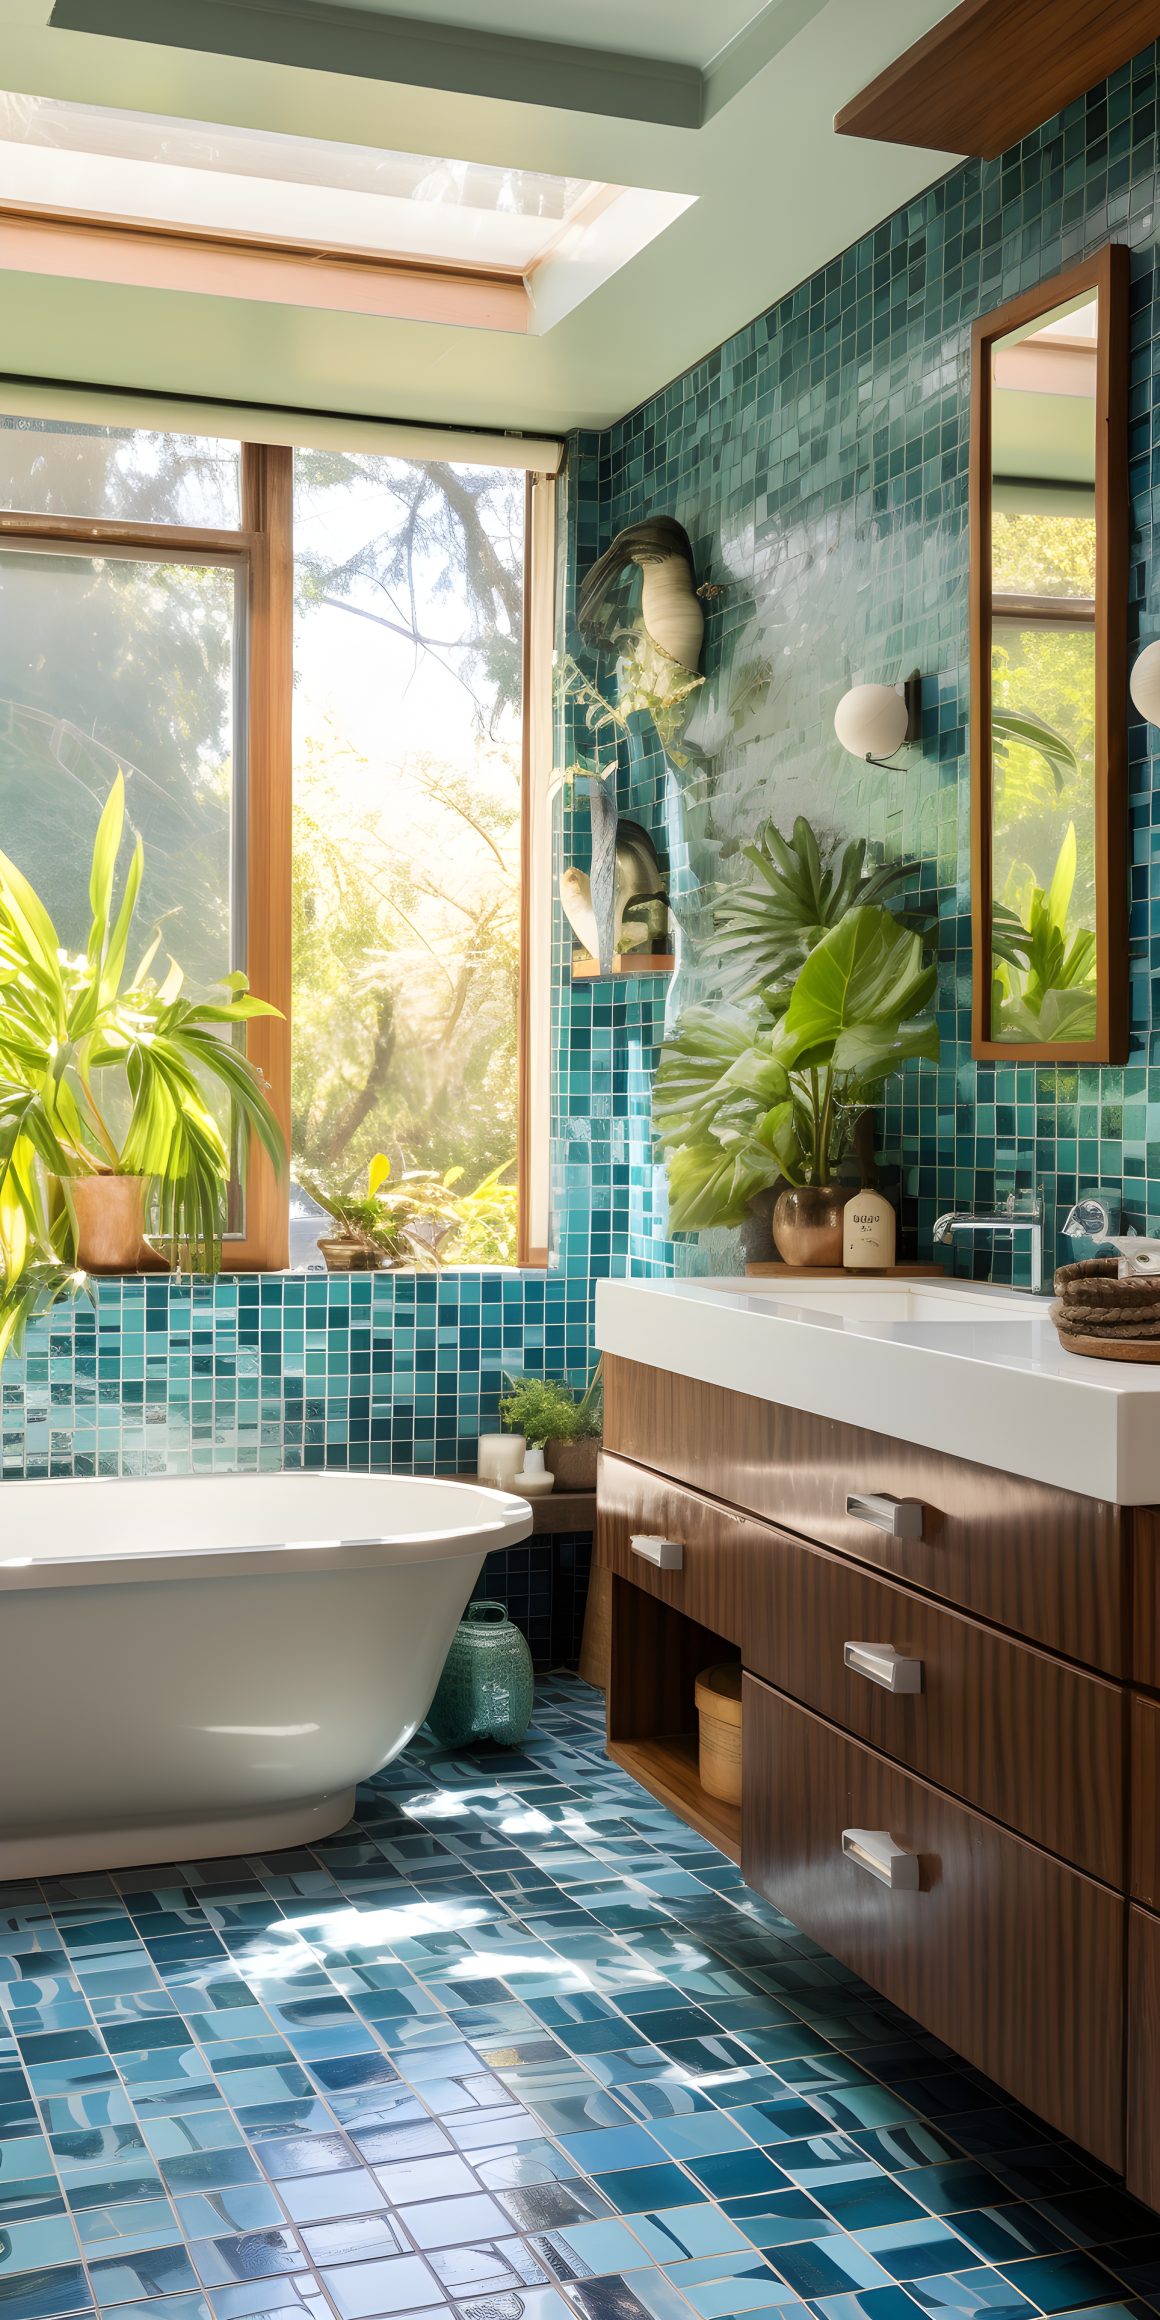 salle de bains exotique avec carreaux céramique turquoise avec plantes vertes et grande fenêtre lumineuse.